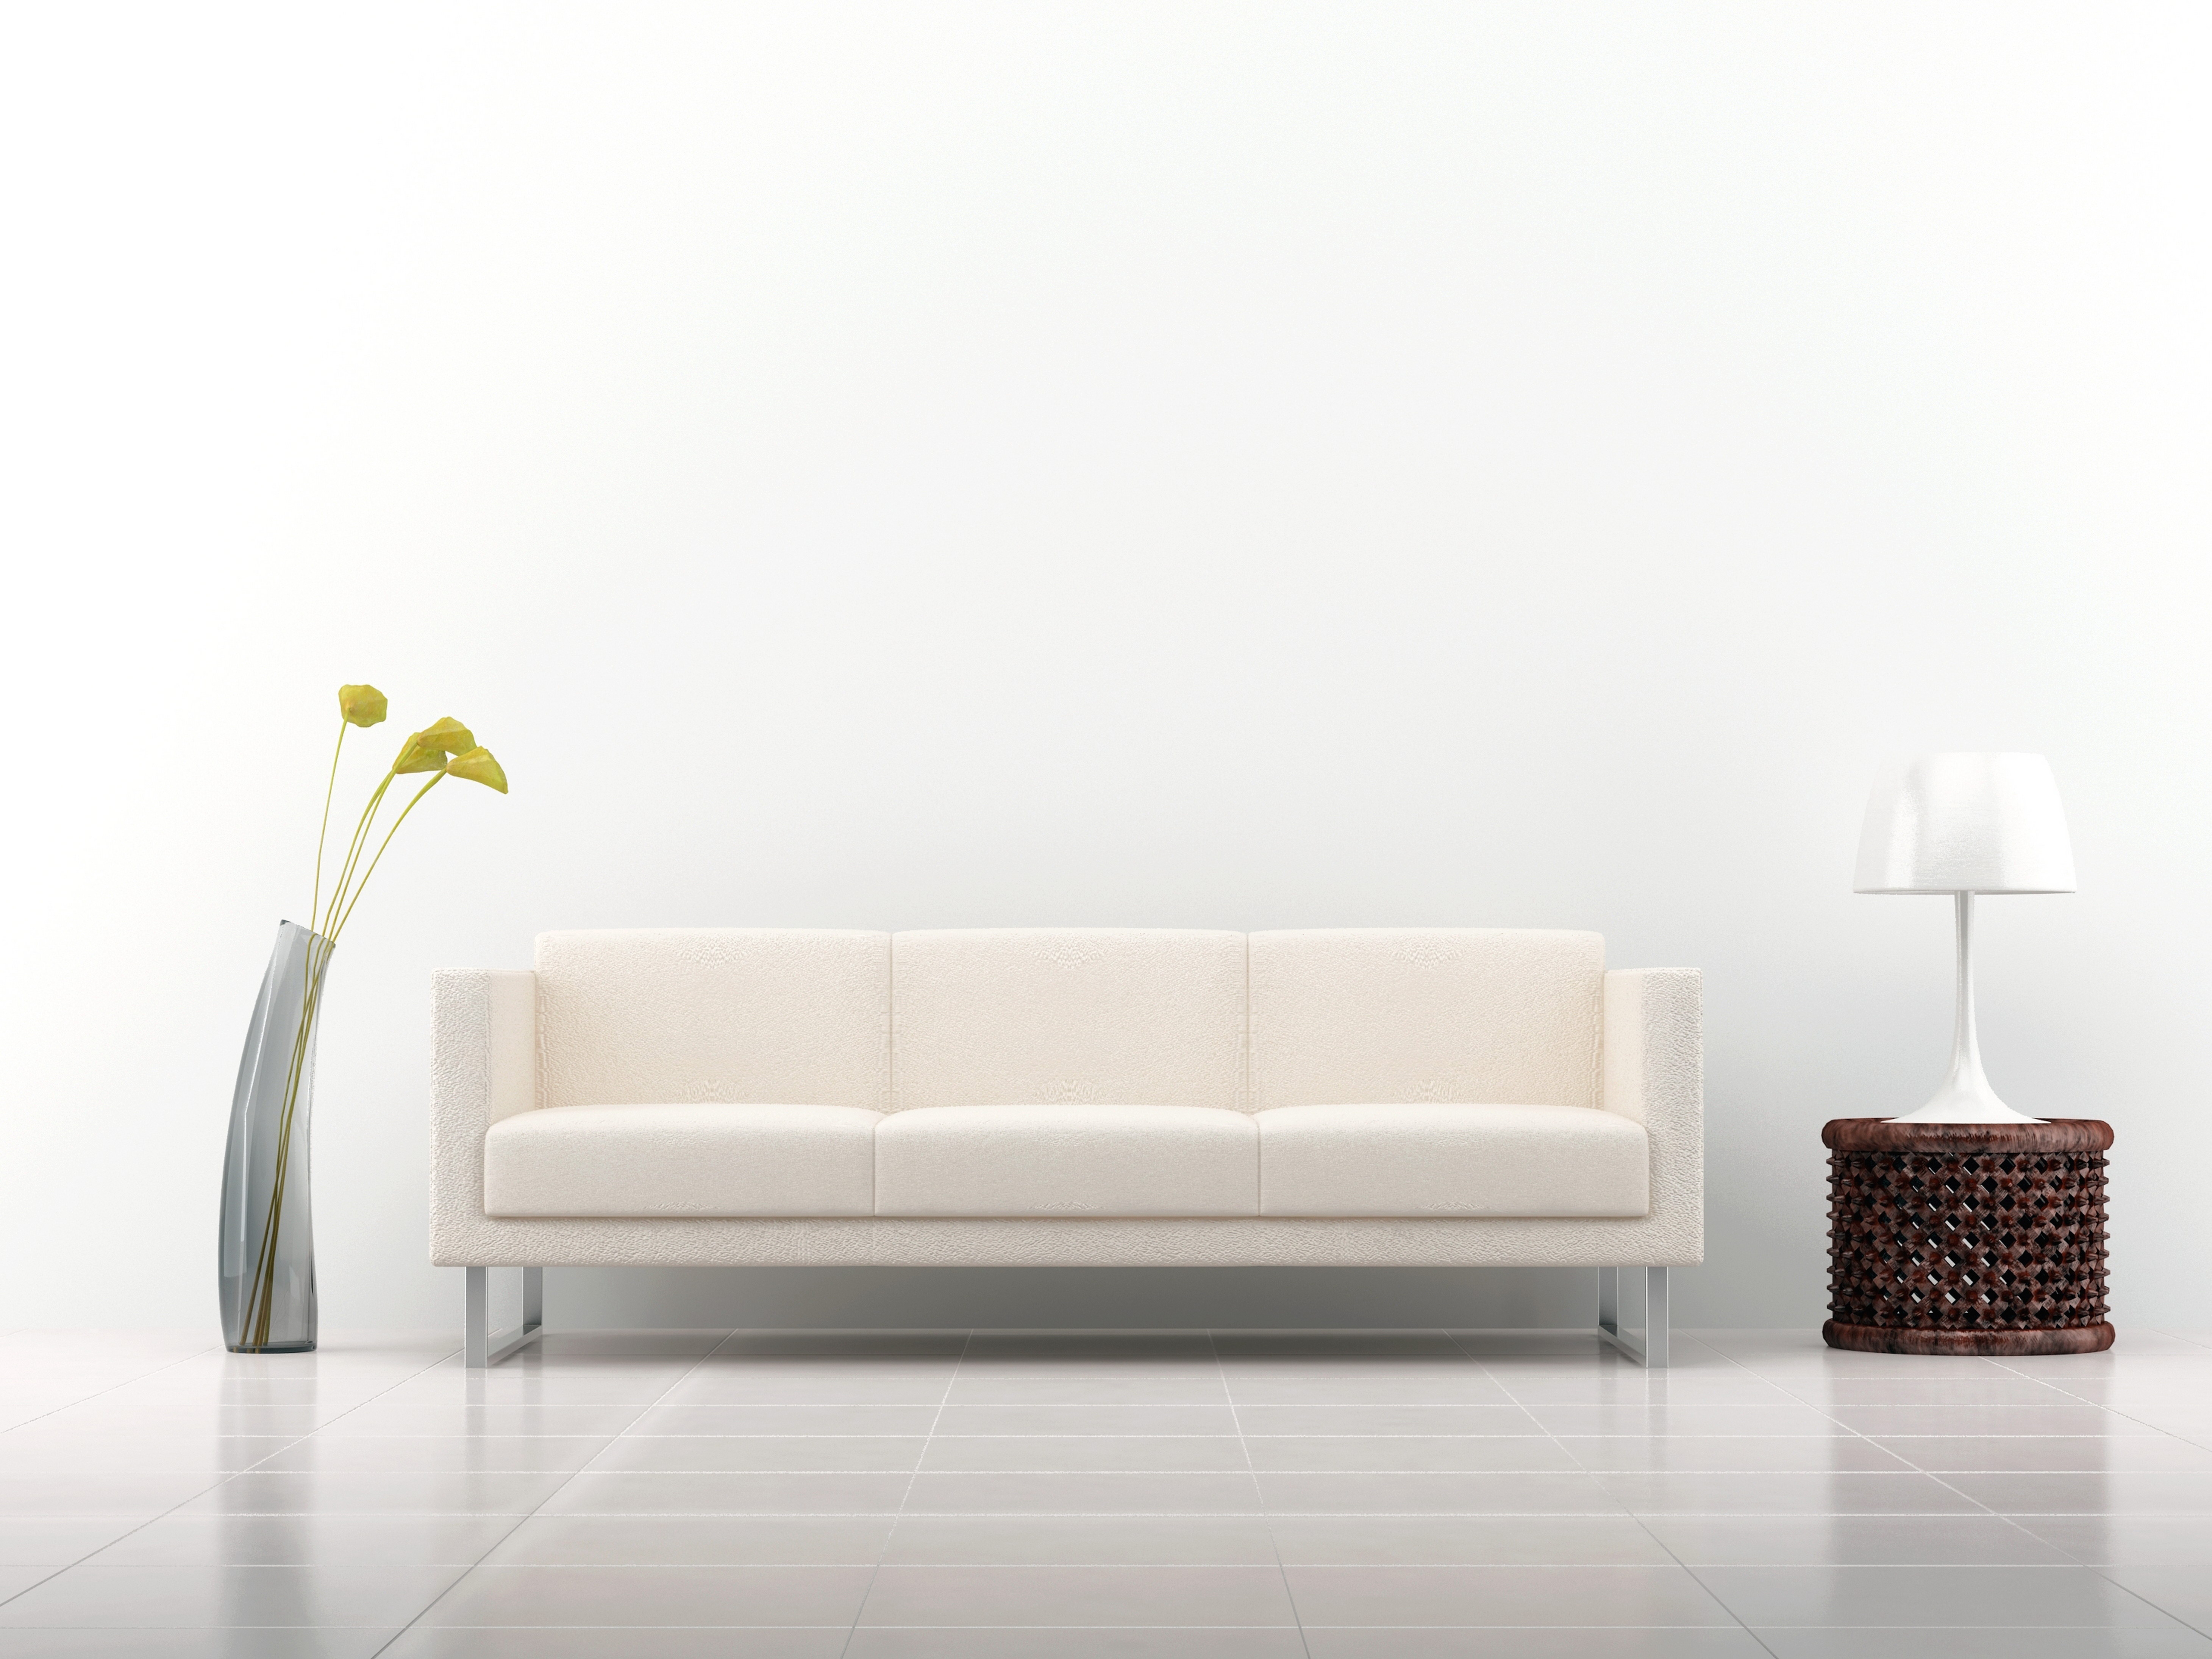 desktop and mobile lamp, sofa, miscellanea, white background